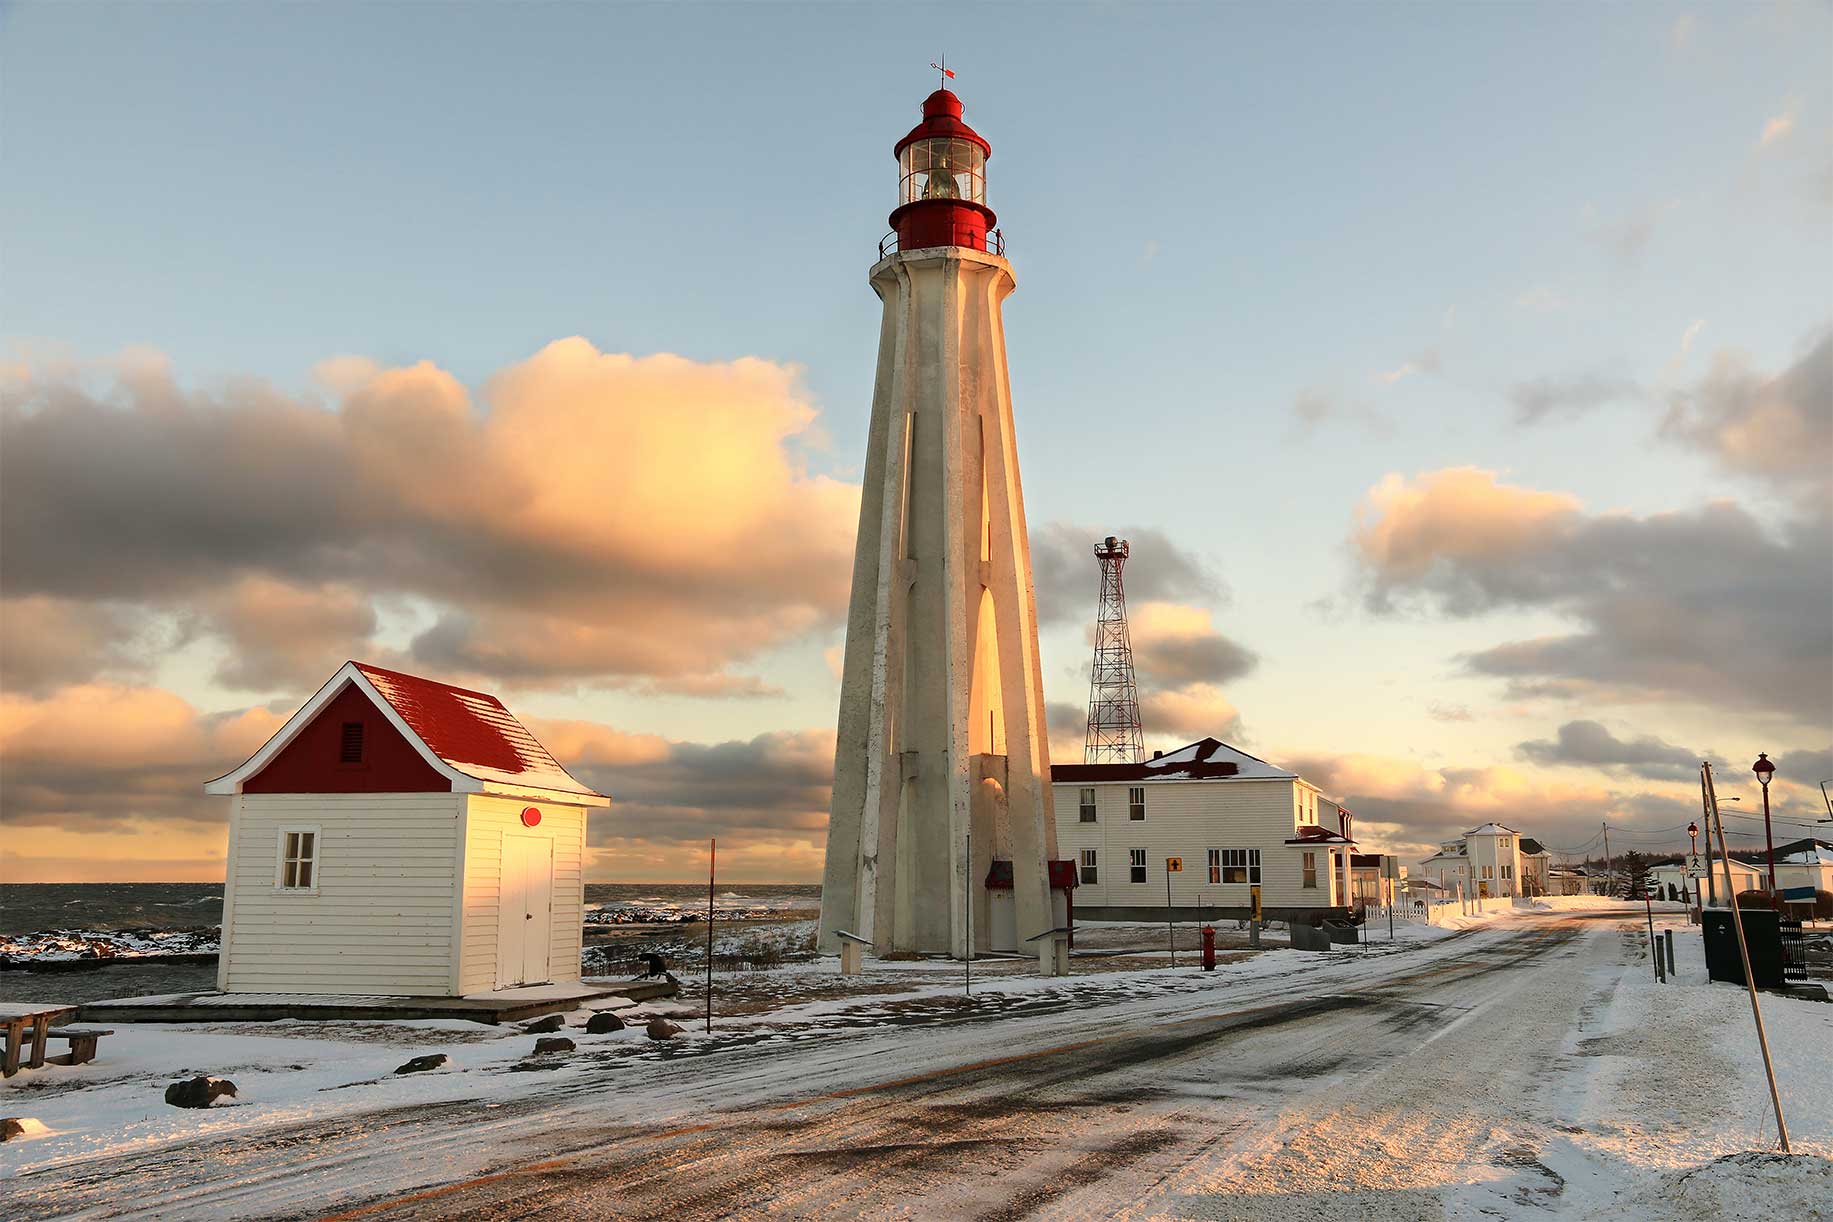 Pointe-au-Père, lieu historique national du Canada. Rimouski, Québec. © Shutterstock